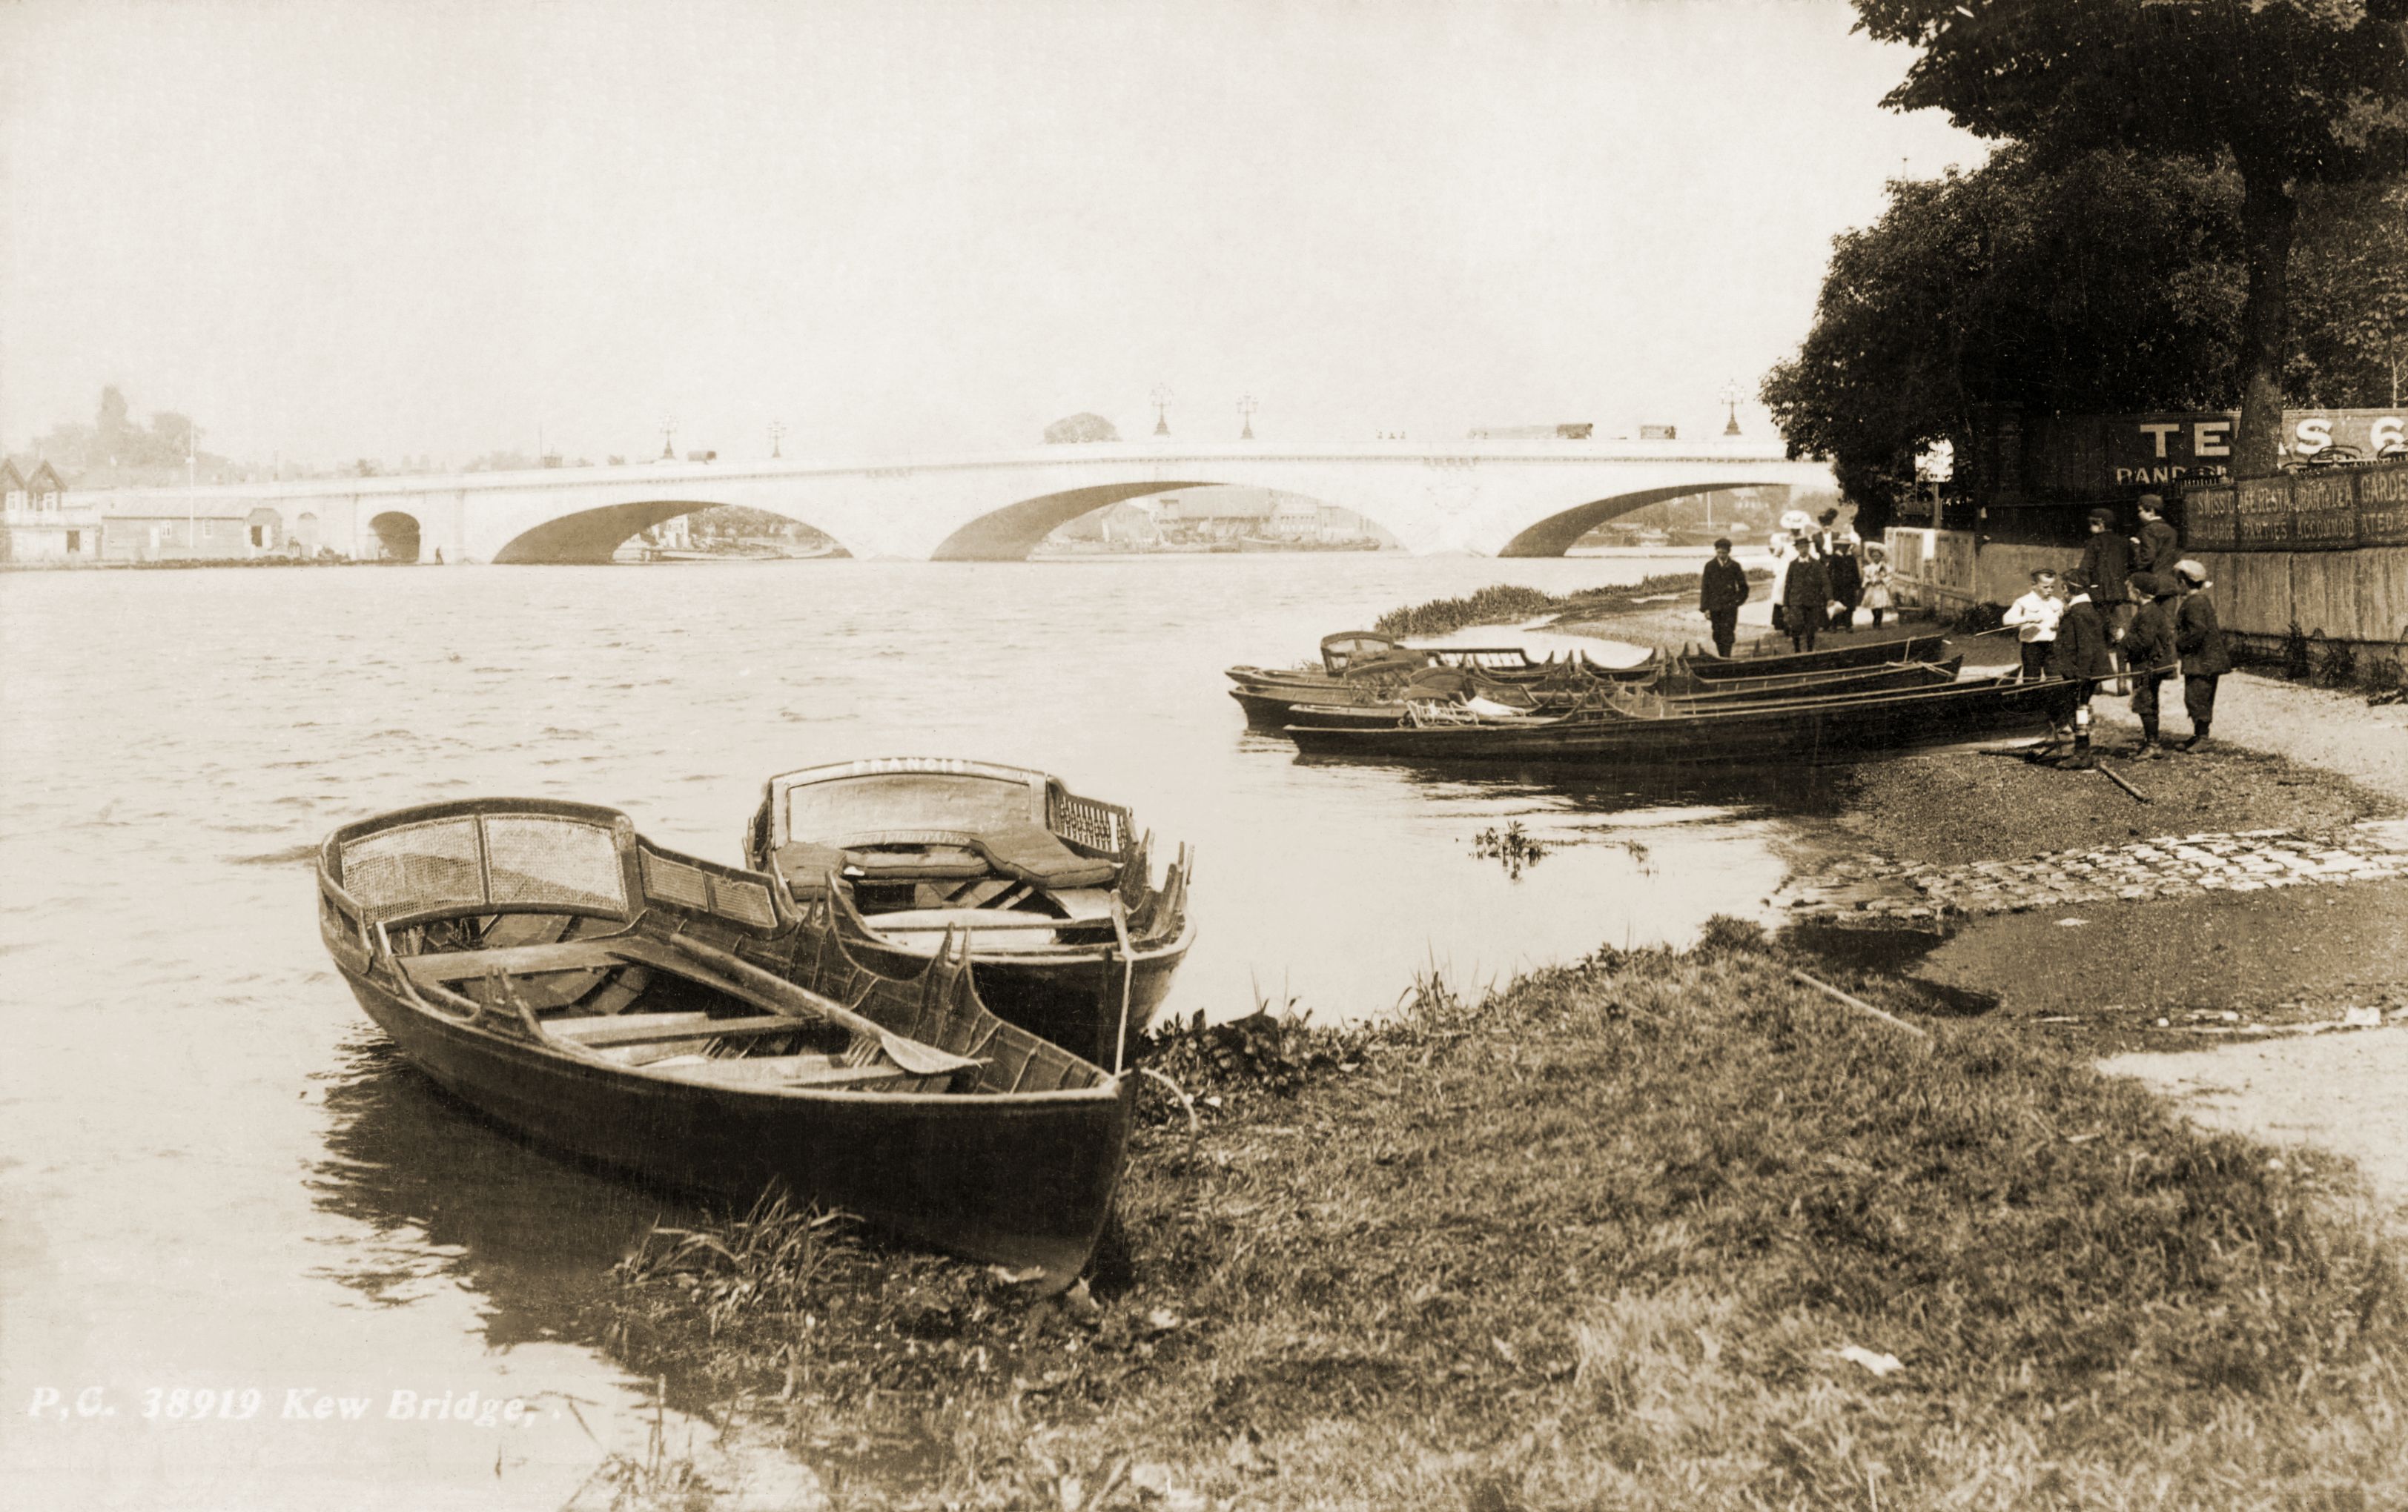 Kew Bridge,Richmond boats,river view